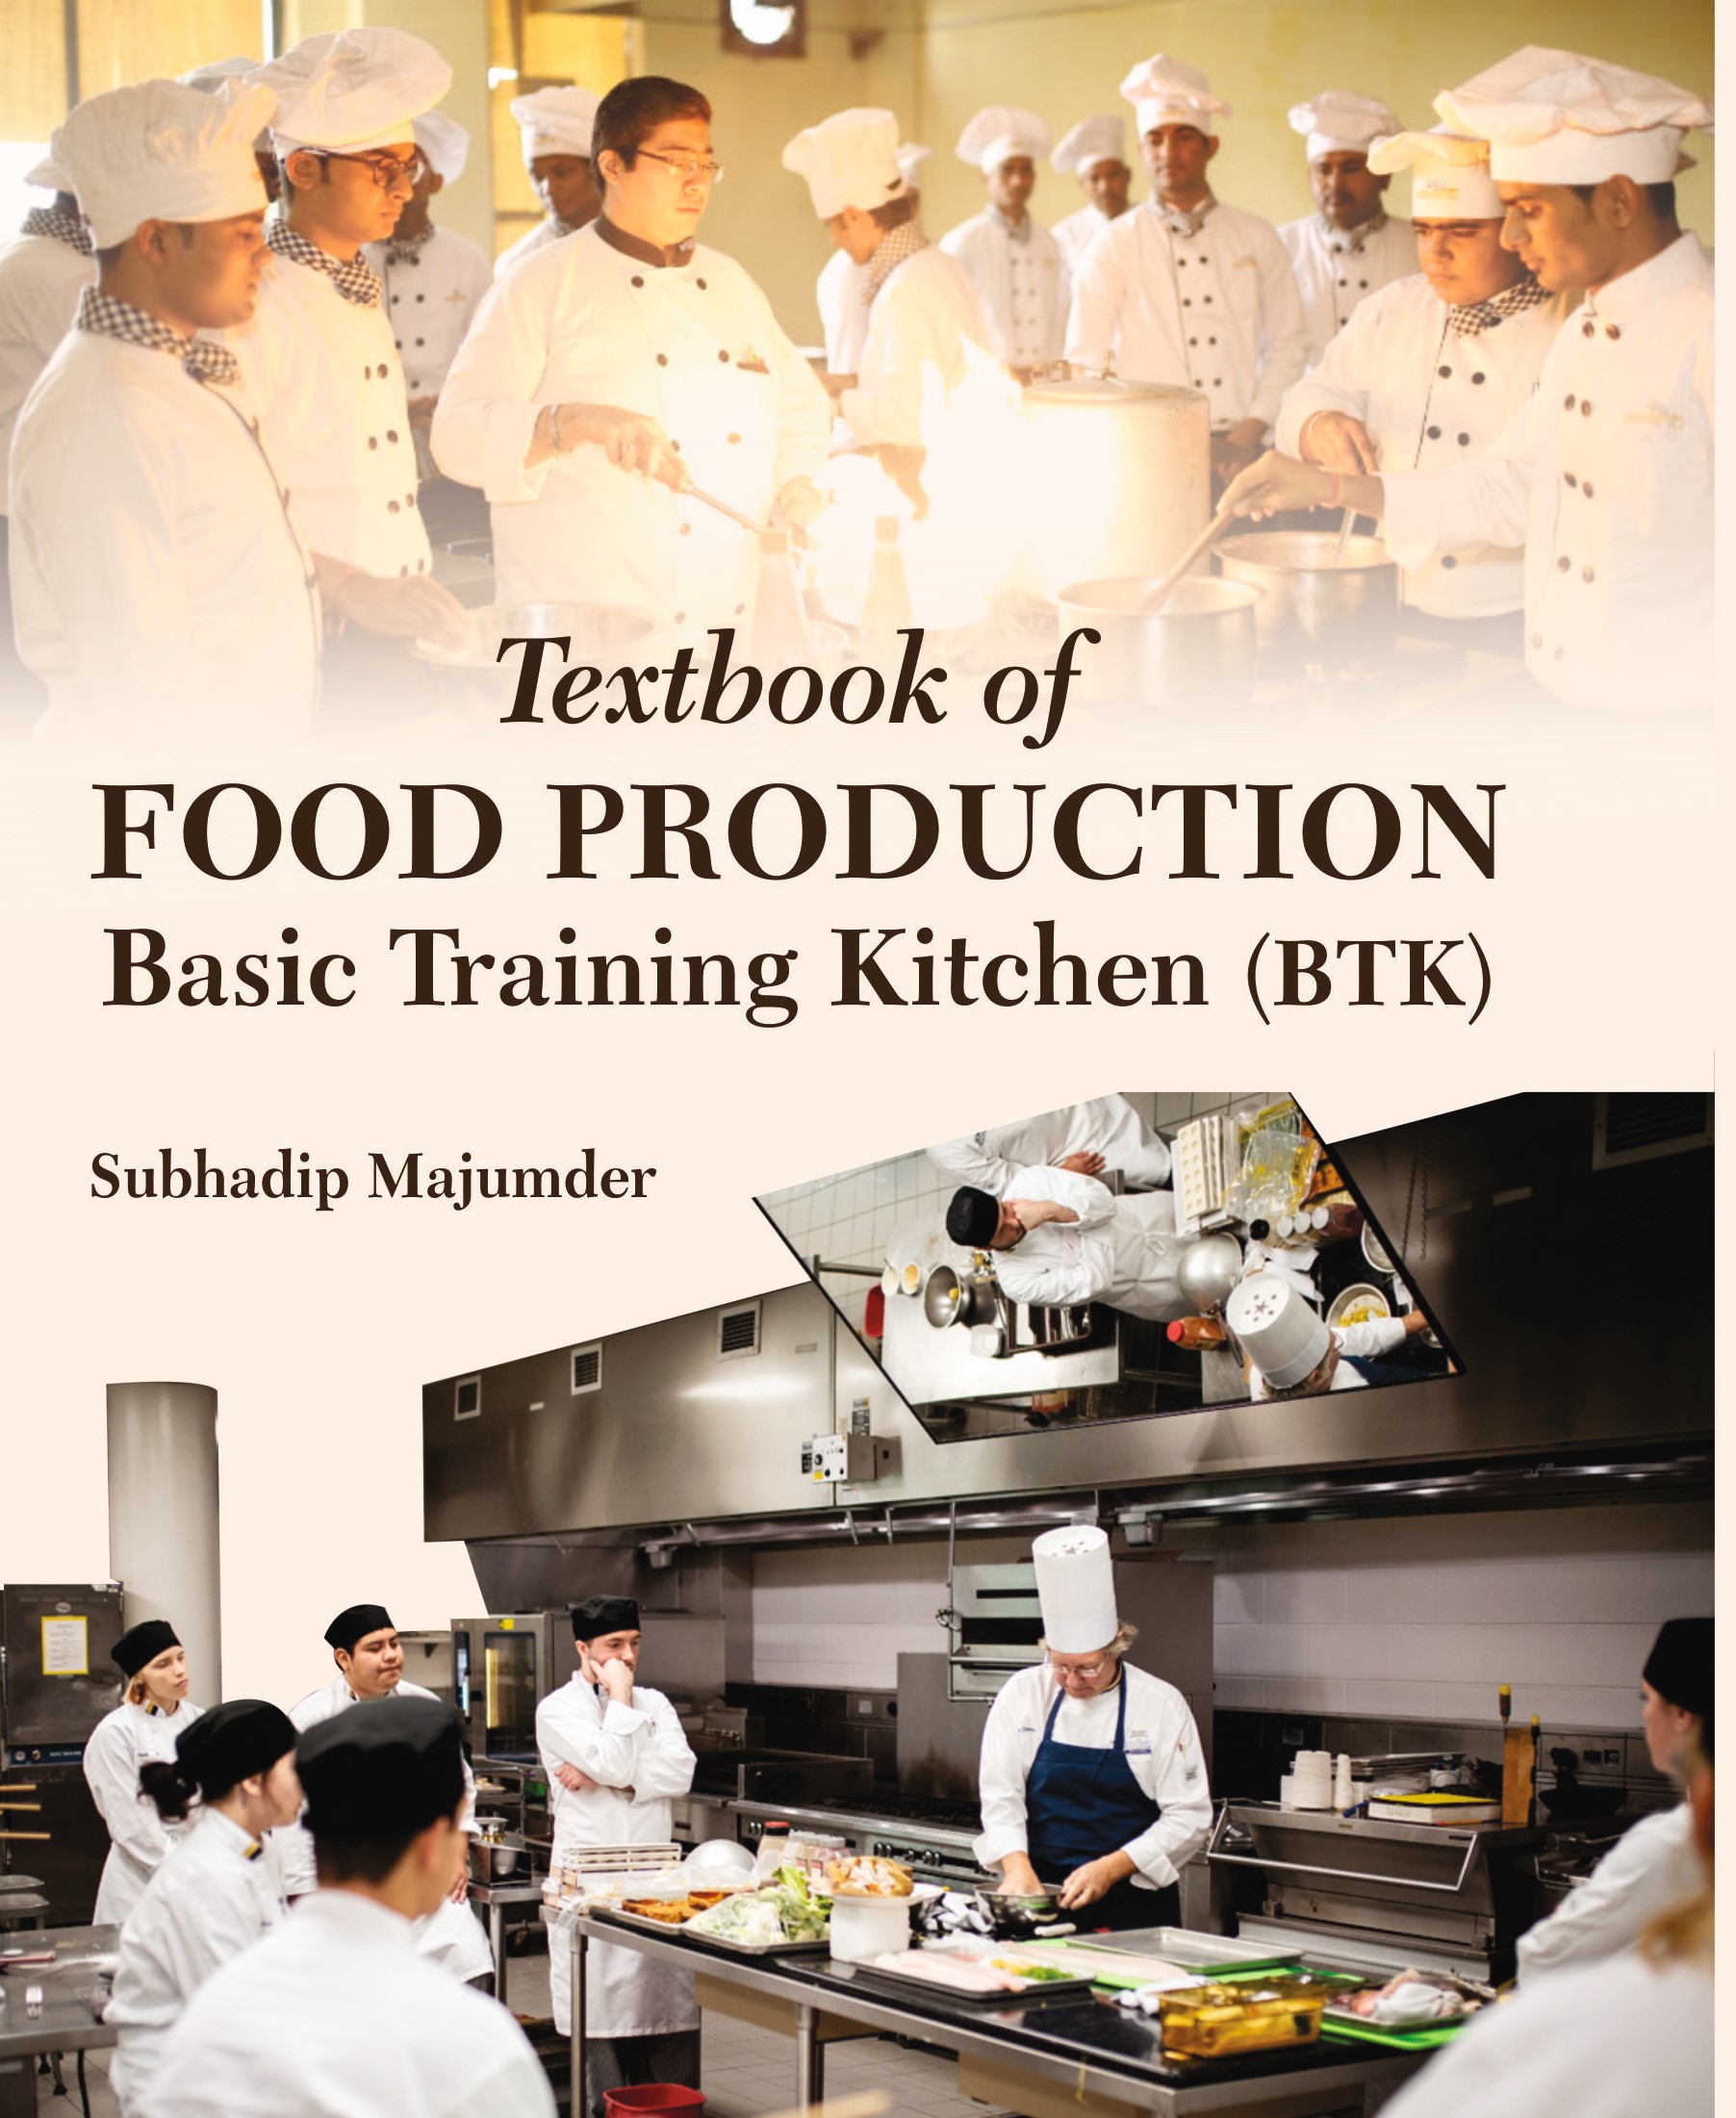 Textbook of Food Production: Basic Training Kitchen (BTK)